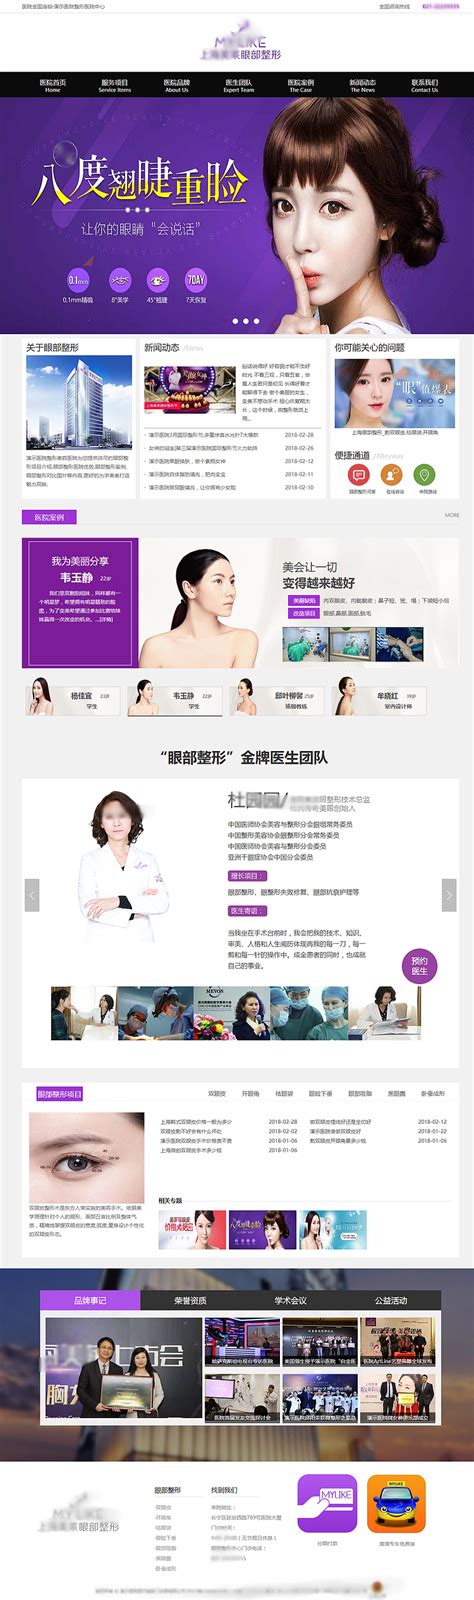 韩仕国际医疗美容网页设计案例,美容行业网站建设案例,美容网站制作案例-海淘科技